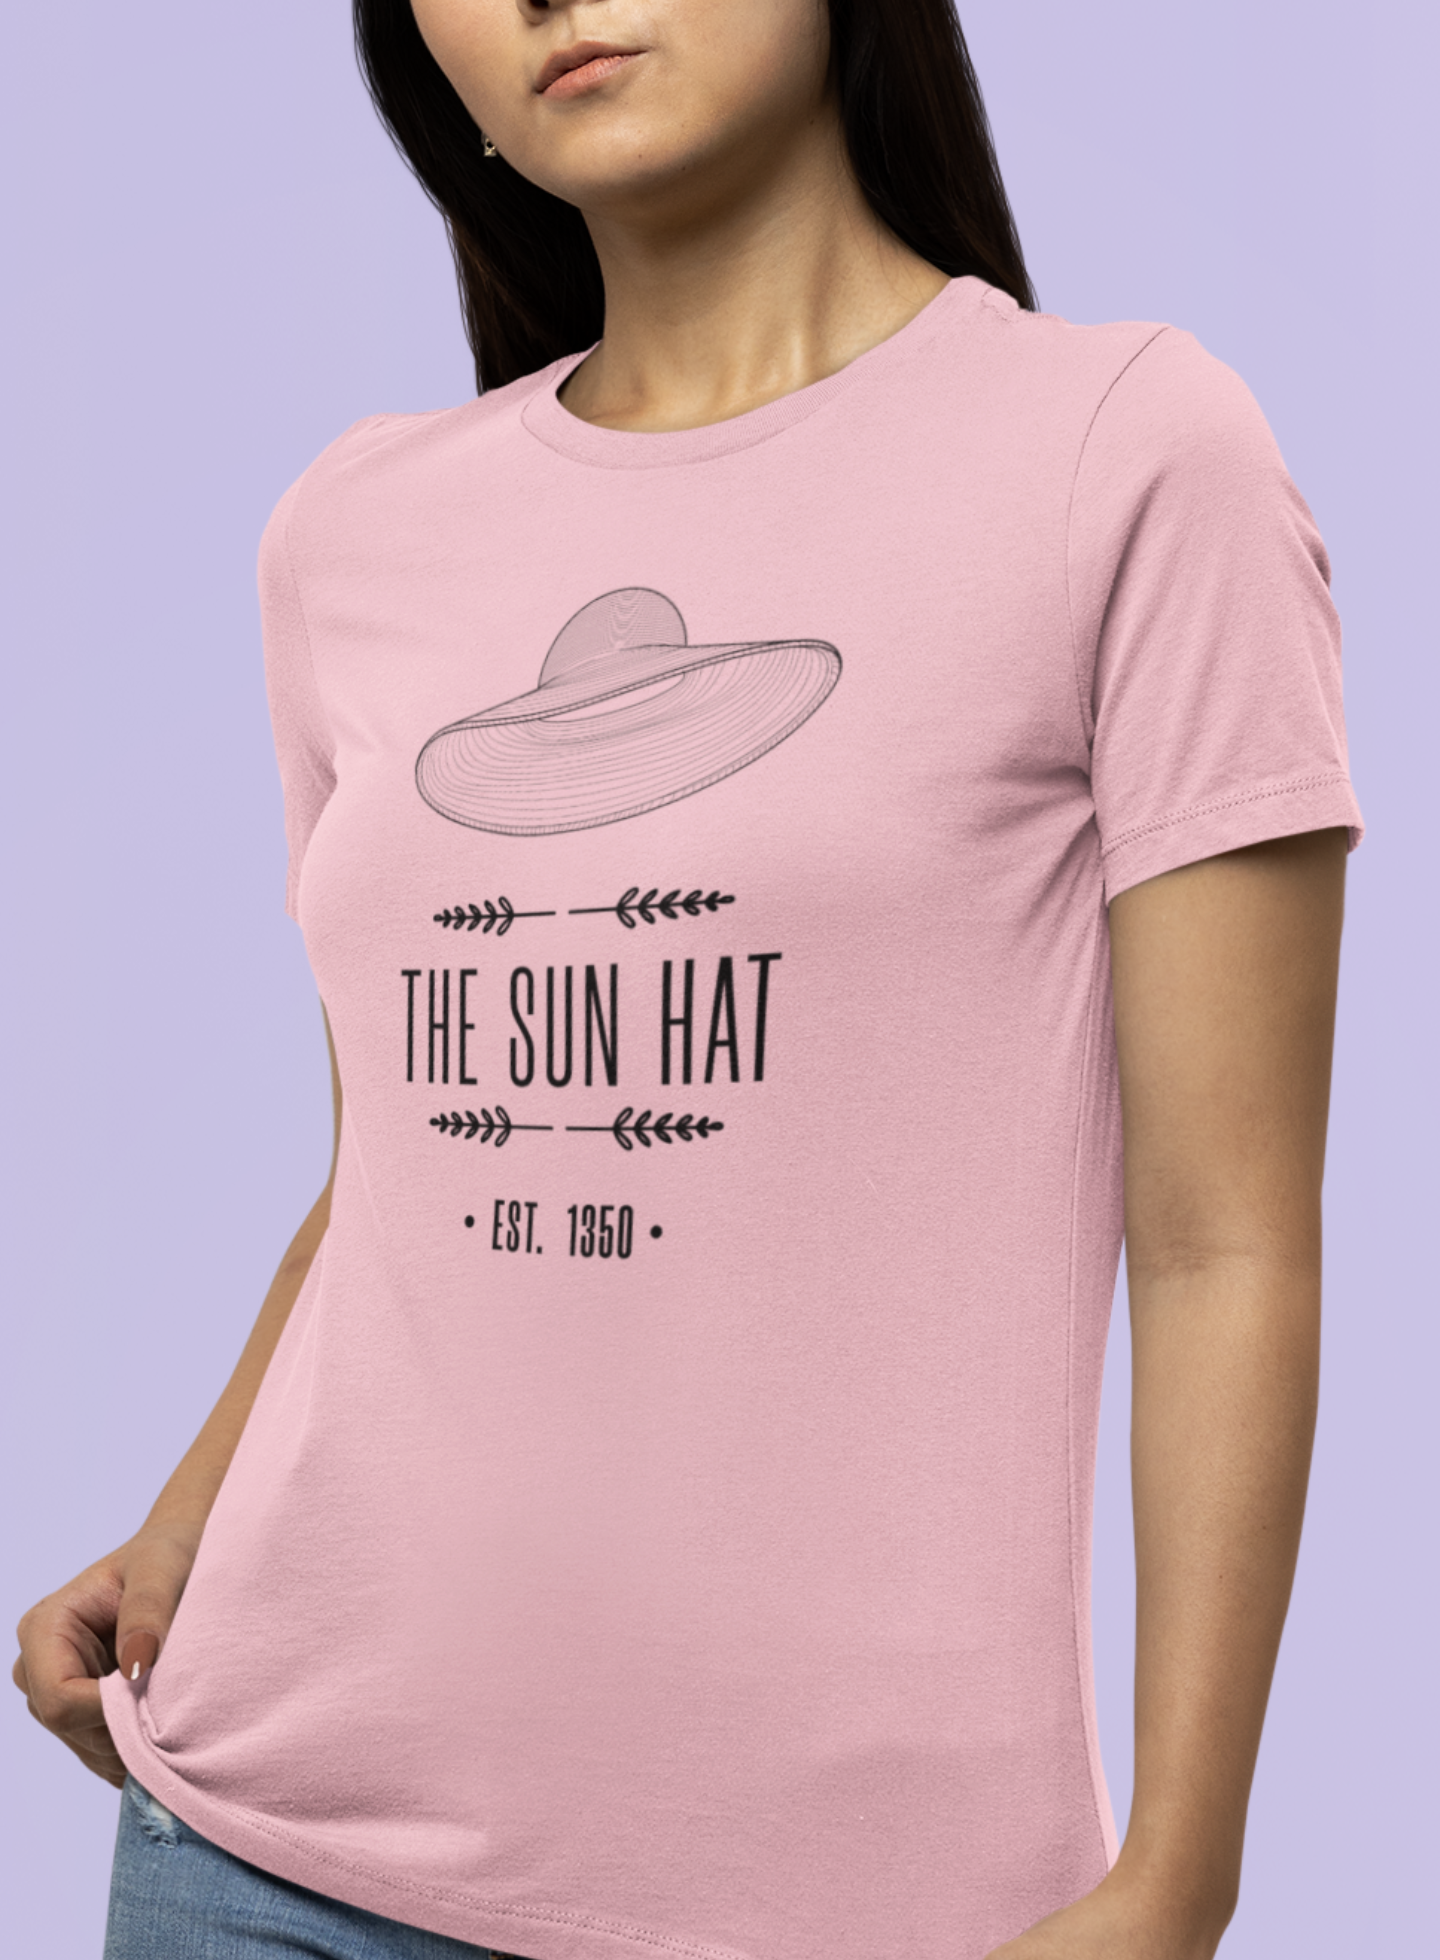 The Sun Hat Tee